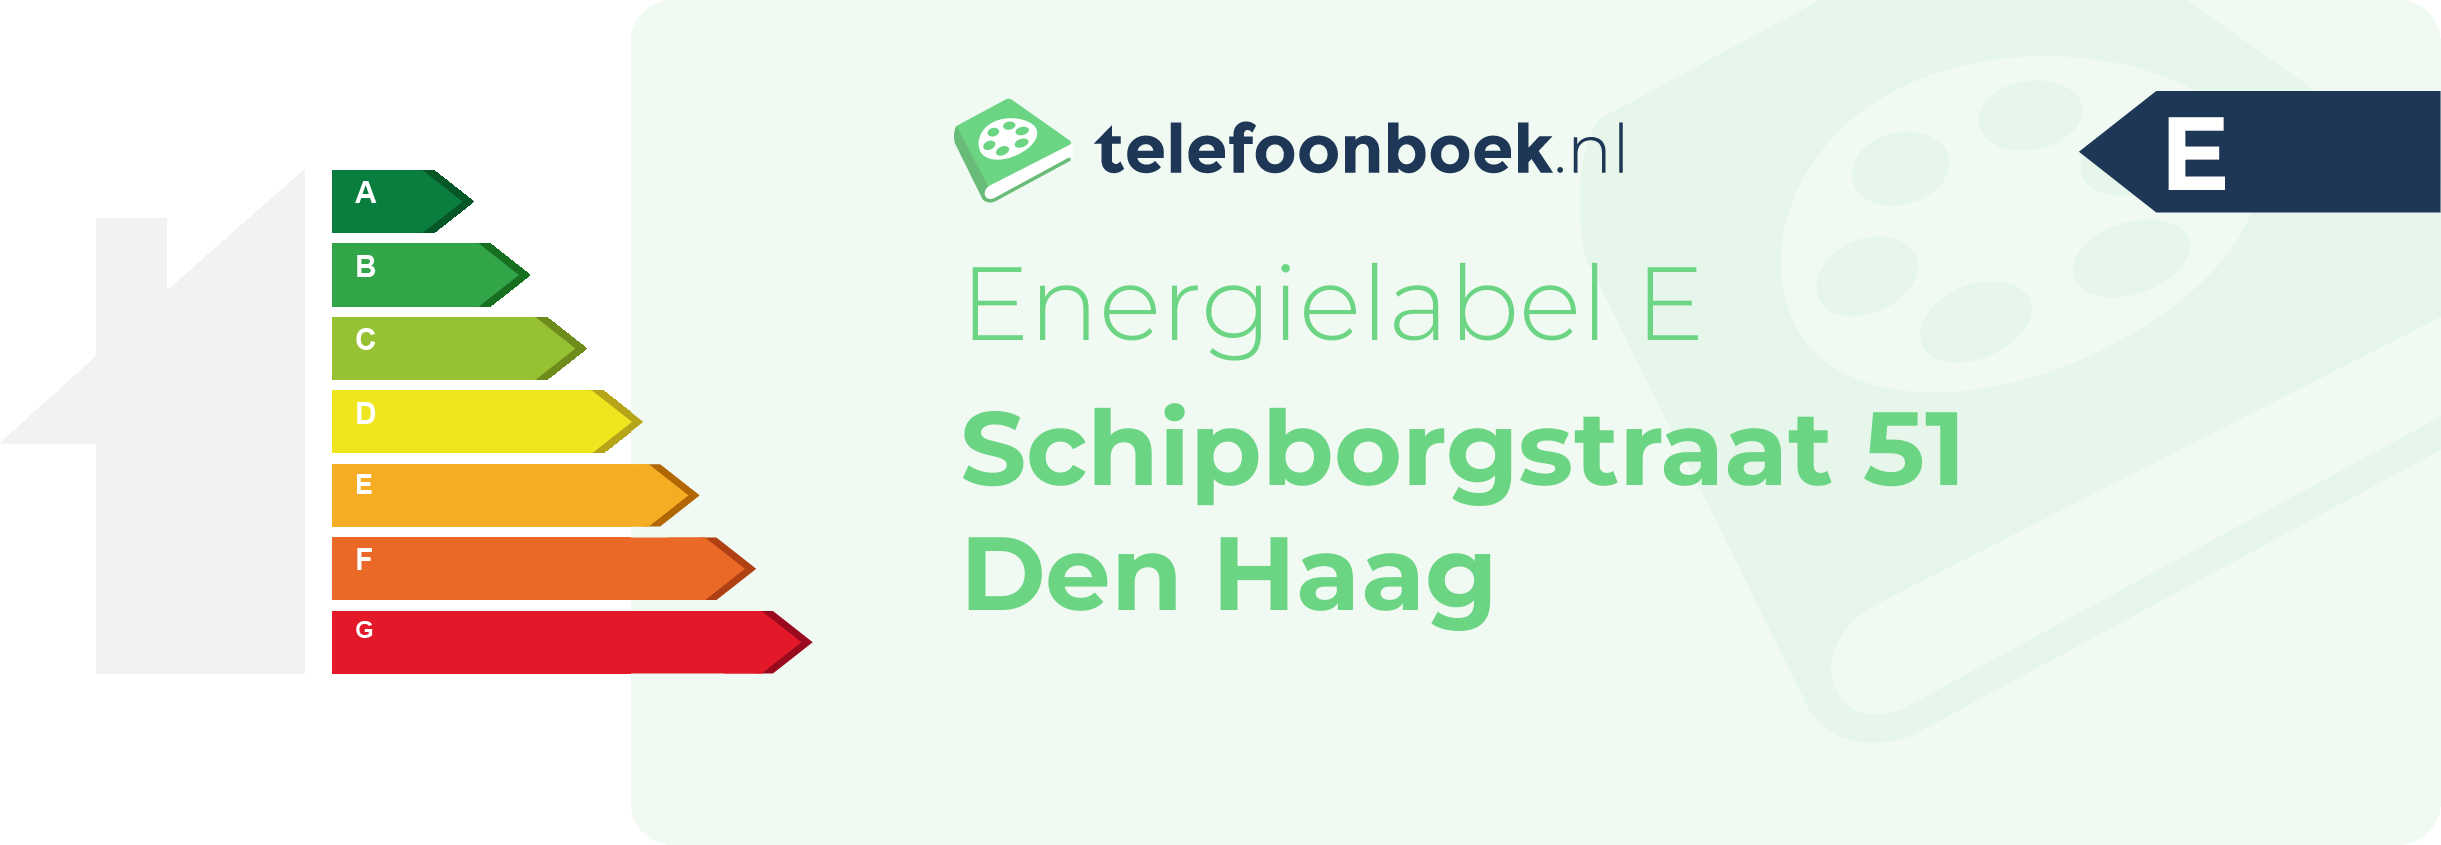 Energielabel Schipborgstraat 51 Den Haag